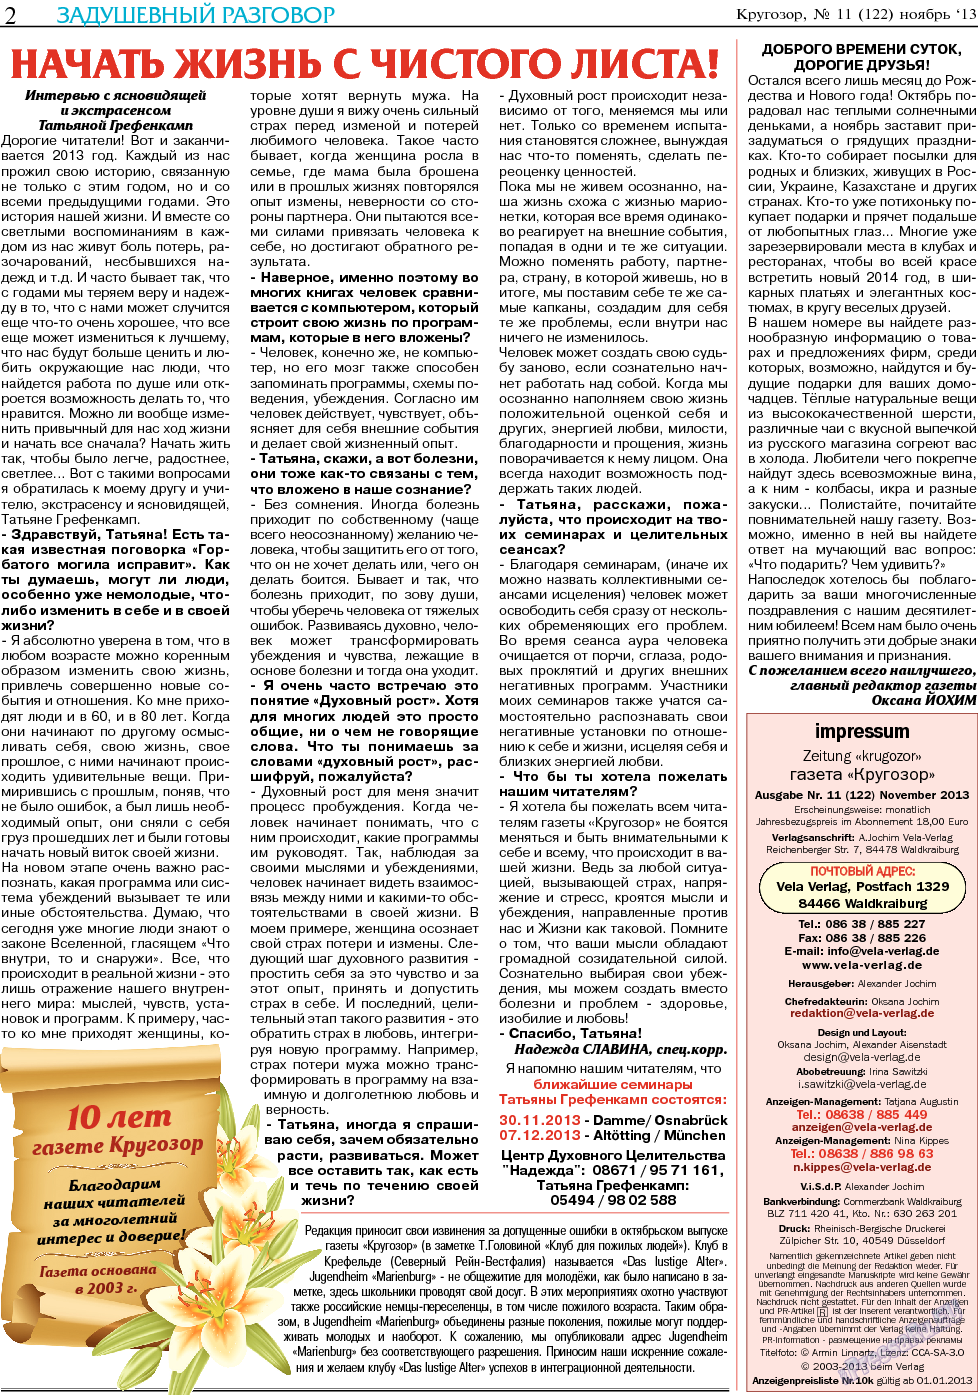 Кругозор, газета. 2013 №11 стр.2